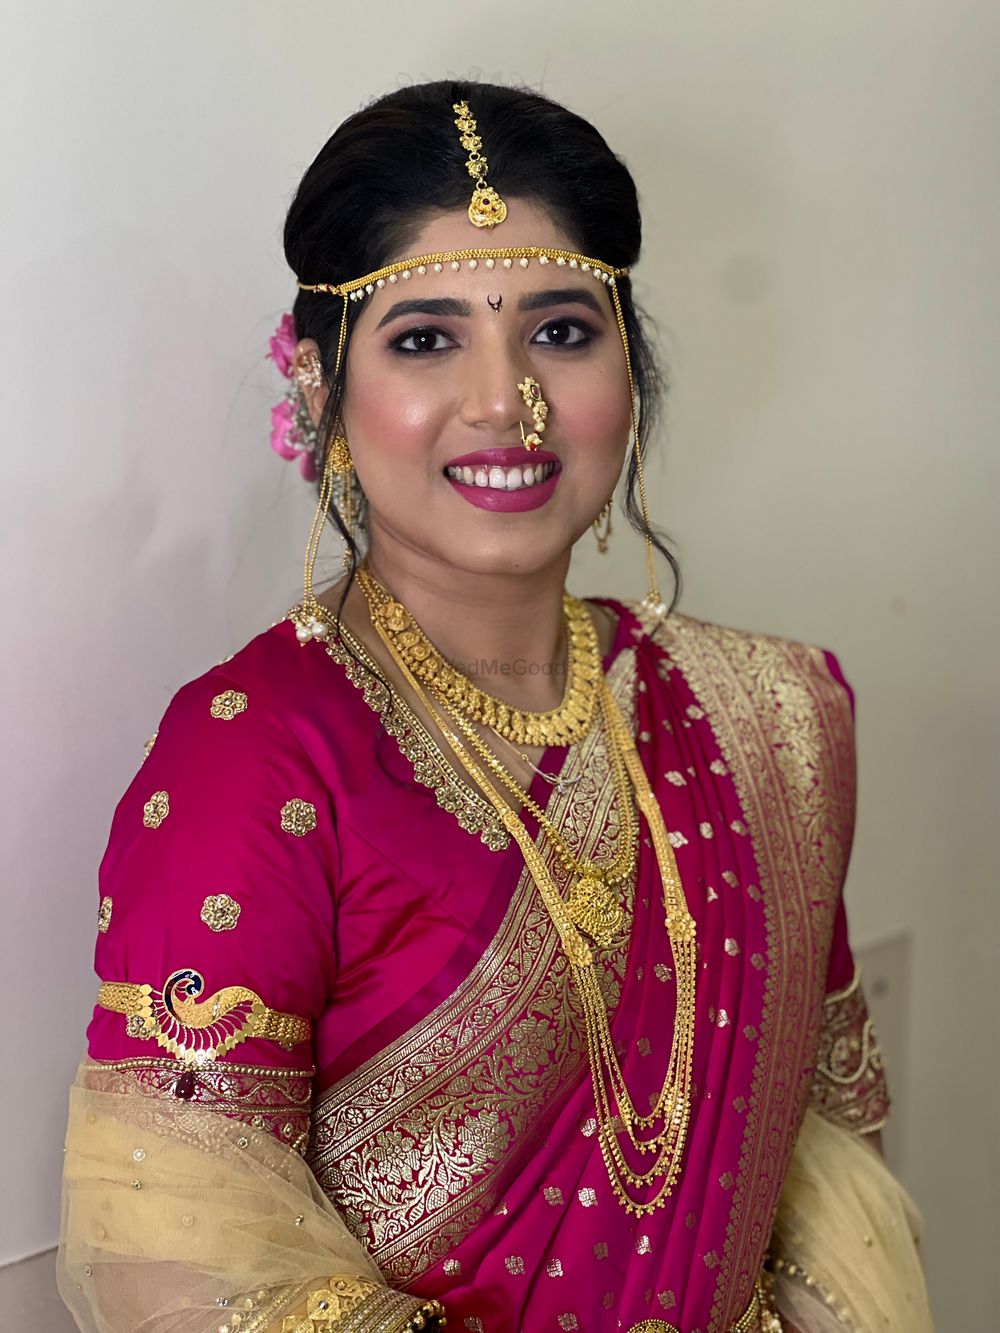 Photo From Maharashtra Bride - By Makeup by Neeta